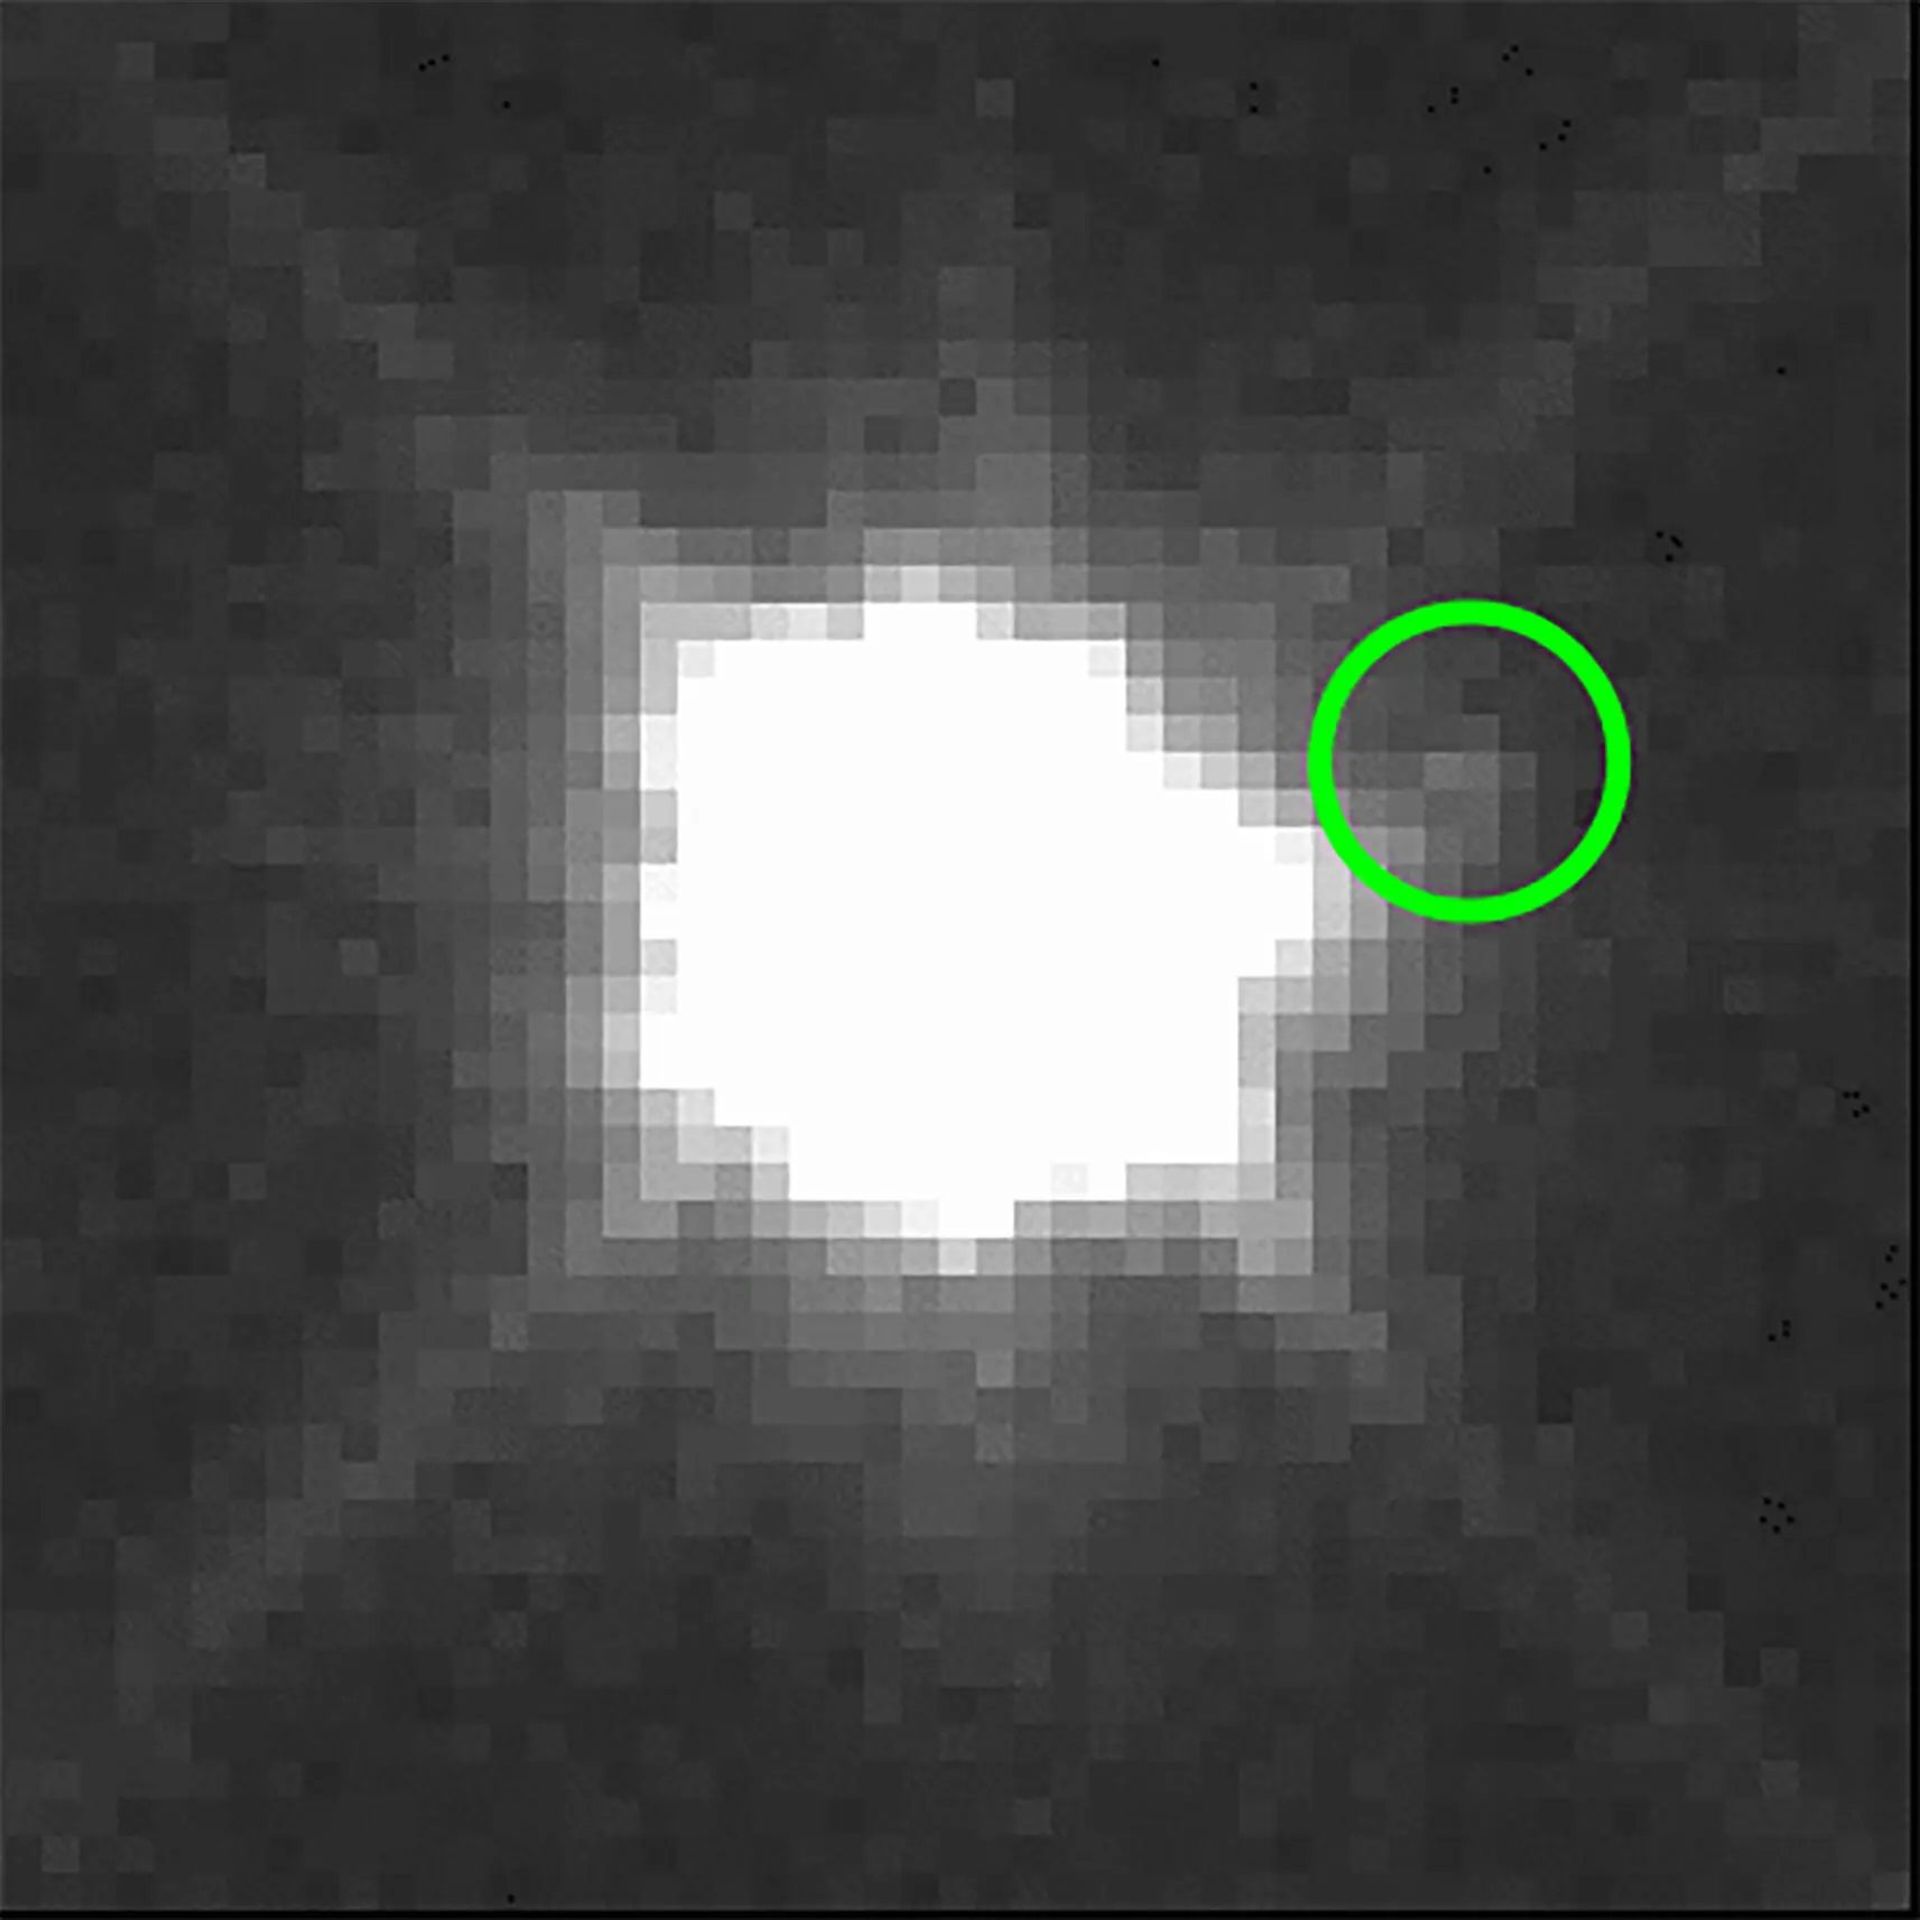 سیارک تروجان یورابیتس و کوئتا قمر آن